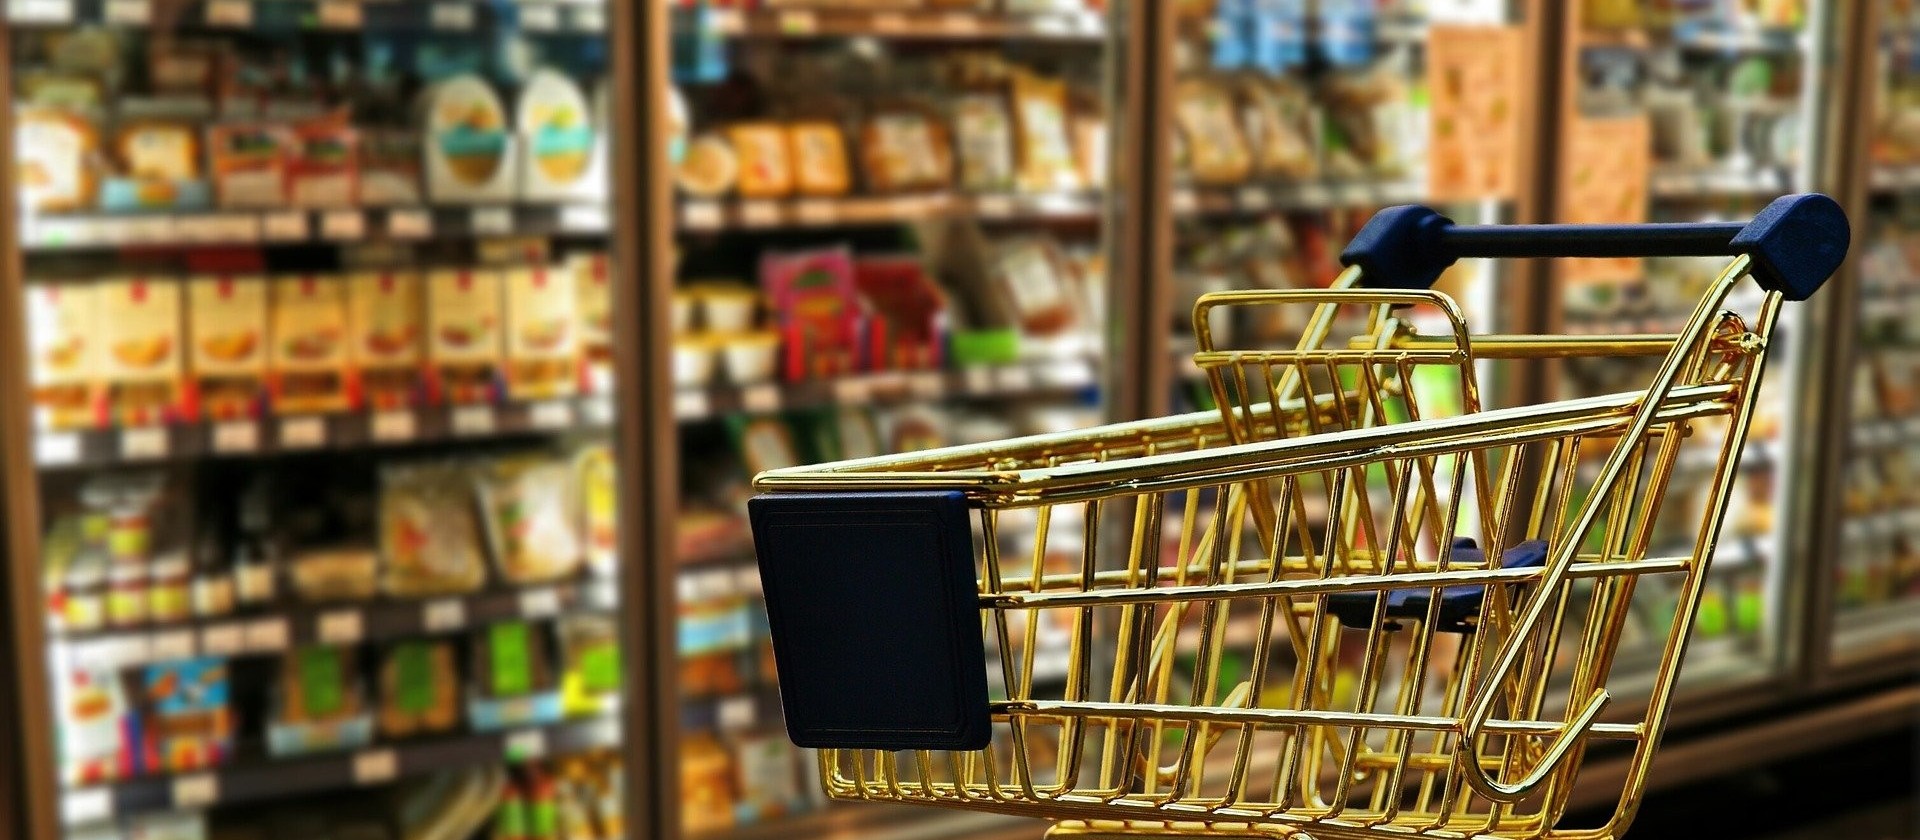 O valor da cesta básica de alimentos em Cascavel aumentou 1,25% em agosto de 2021